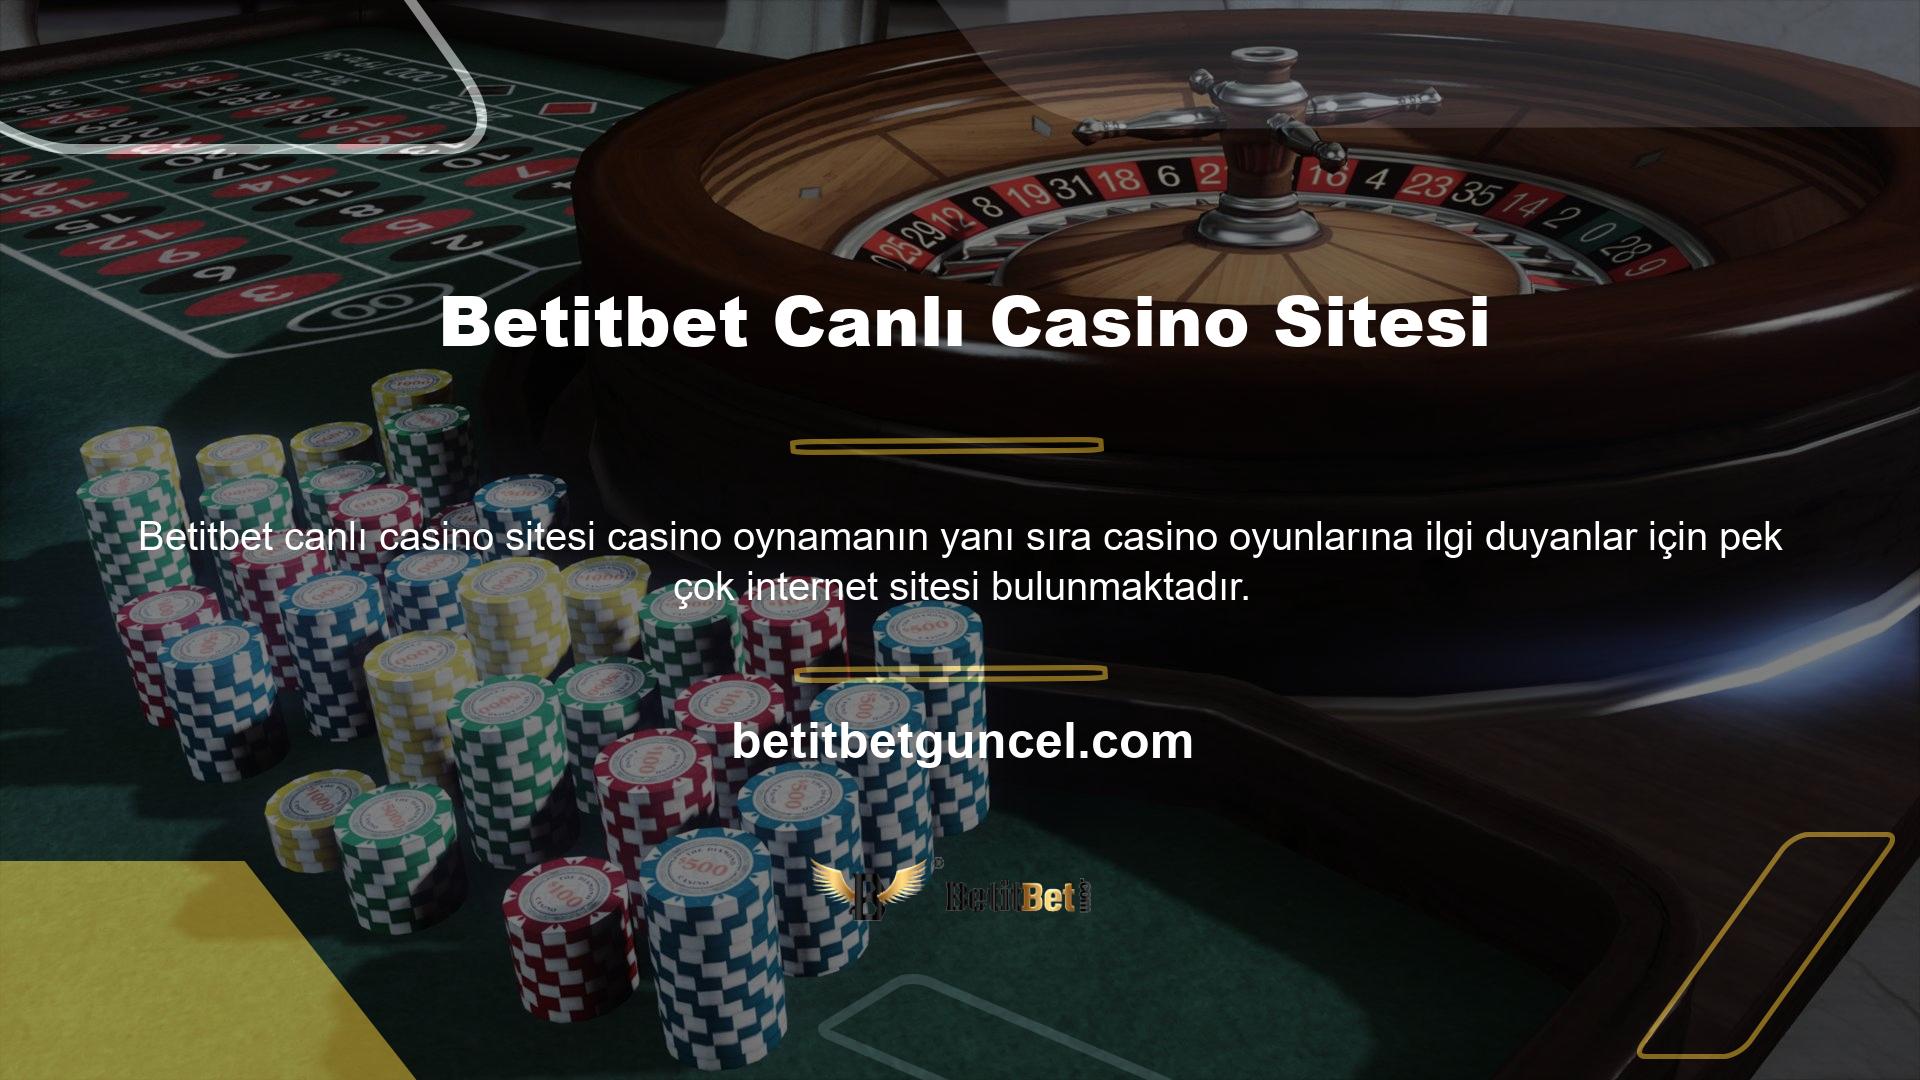 Betitbet canlı casino sitesi, ilginç siteler arayan kişiler tarafından en çok ziyaret edilen sitelerden biridir